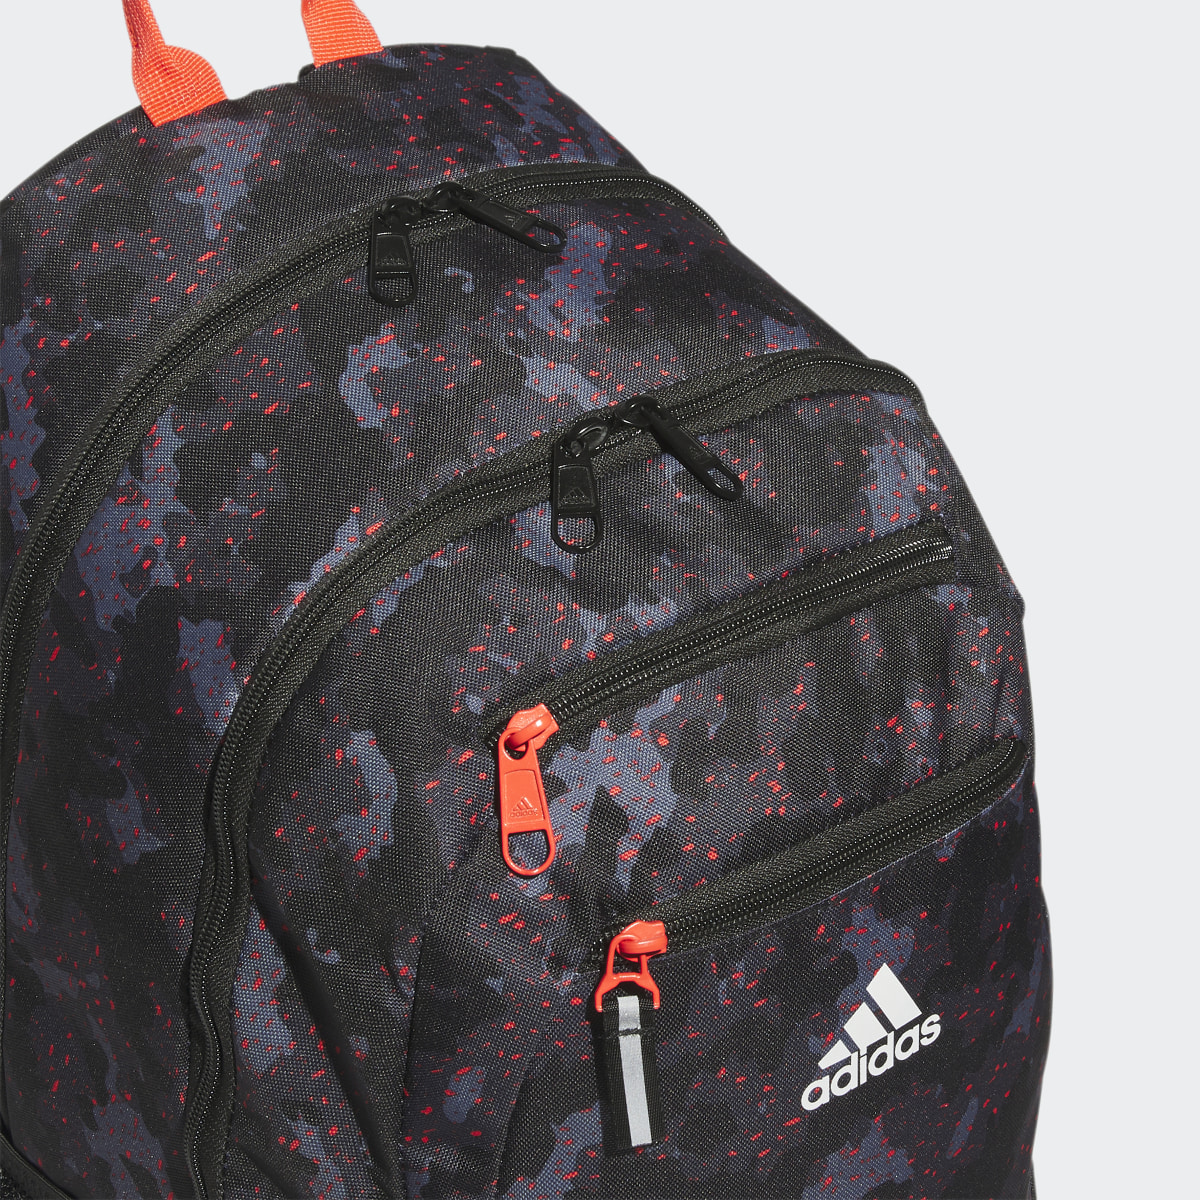 Adidas Foundation 6 Backpack. 6